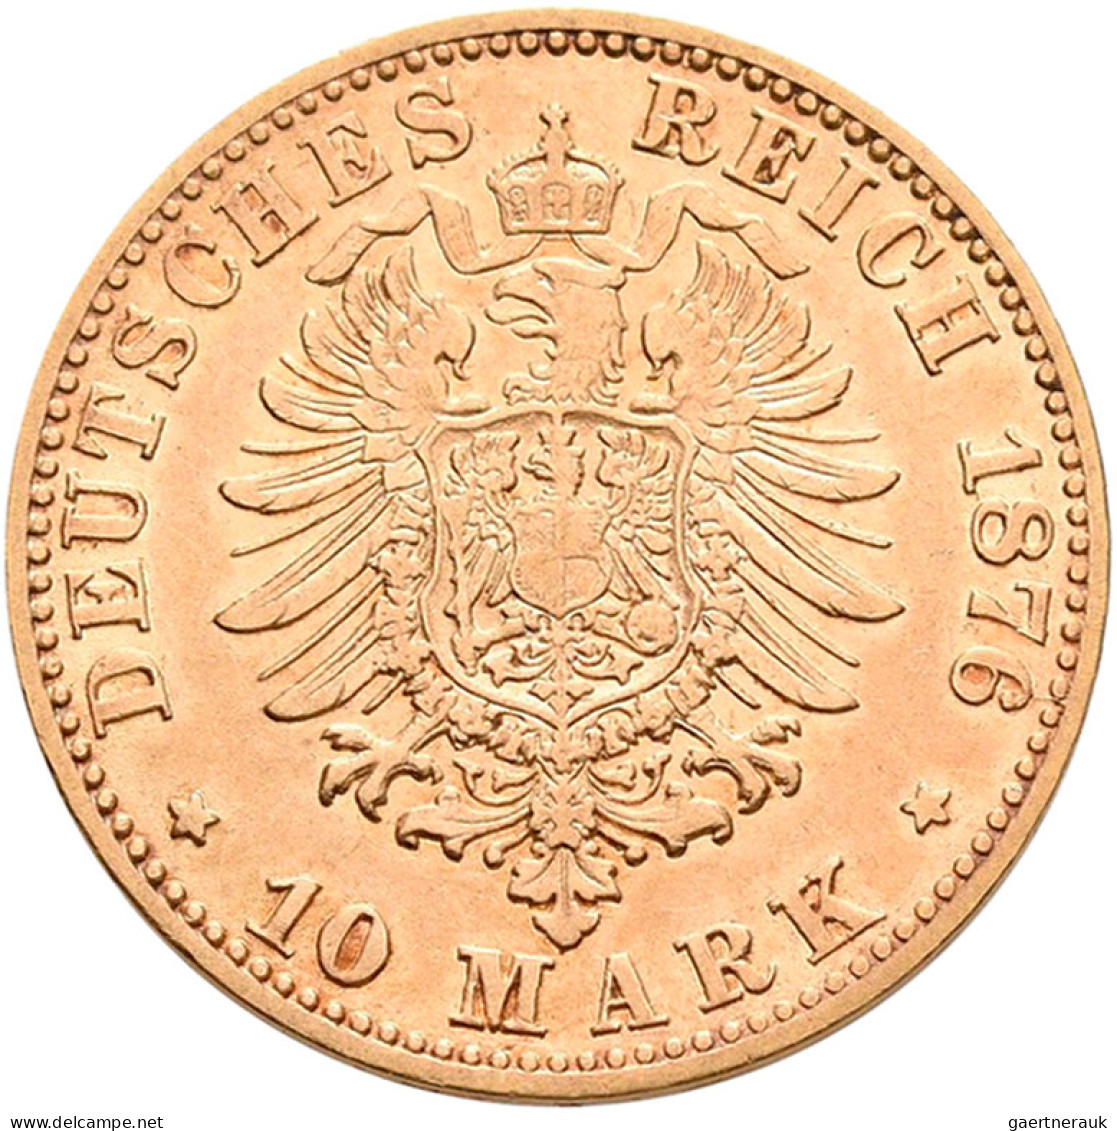 Baden - Anlagegold: Friedrich I. 1852-1907: 10 Mark 1876 G, Jäger 186, Gold 900/ - 5, 10 & 20 Mark Goud